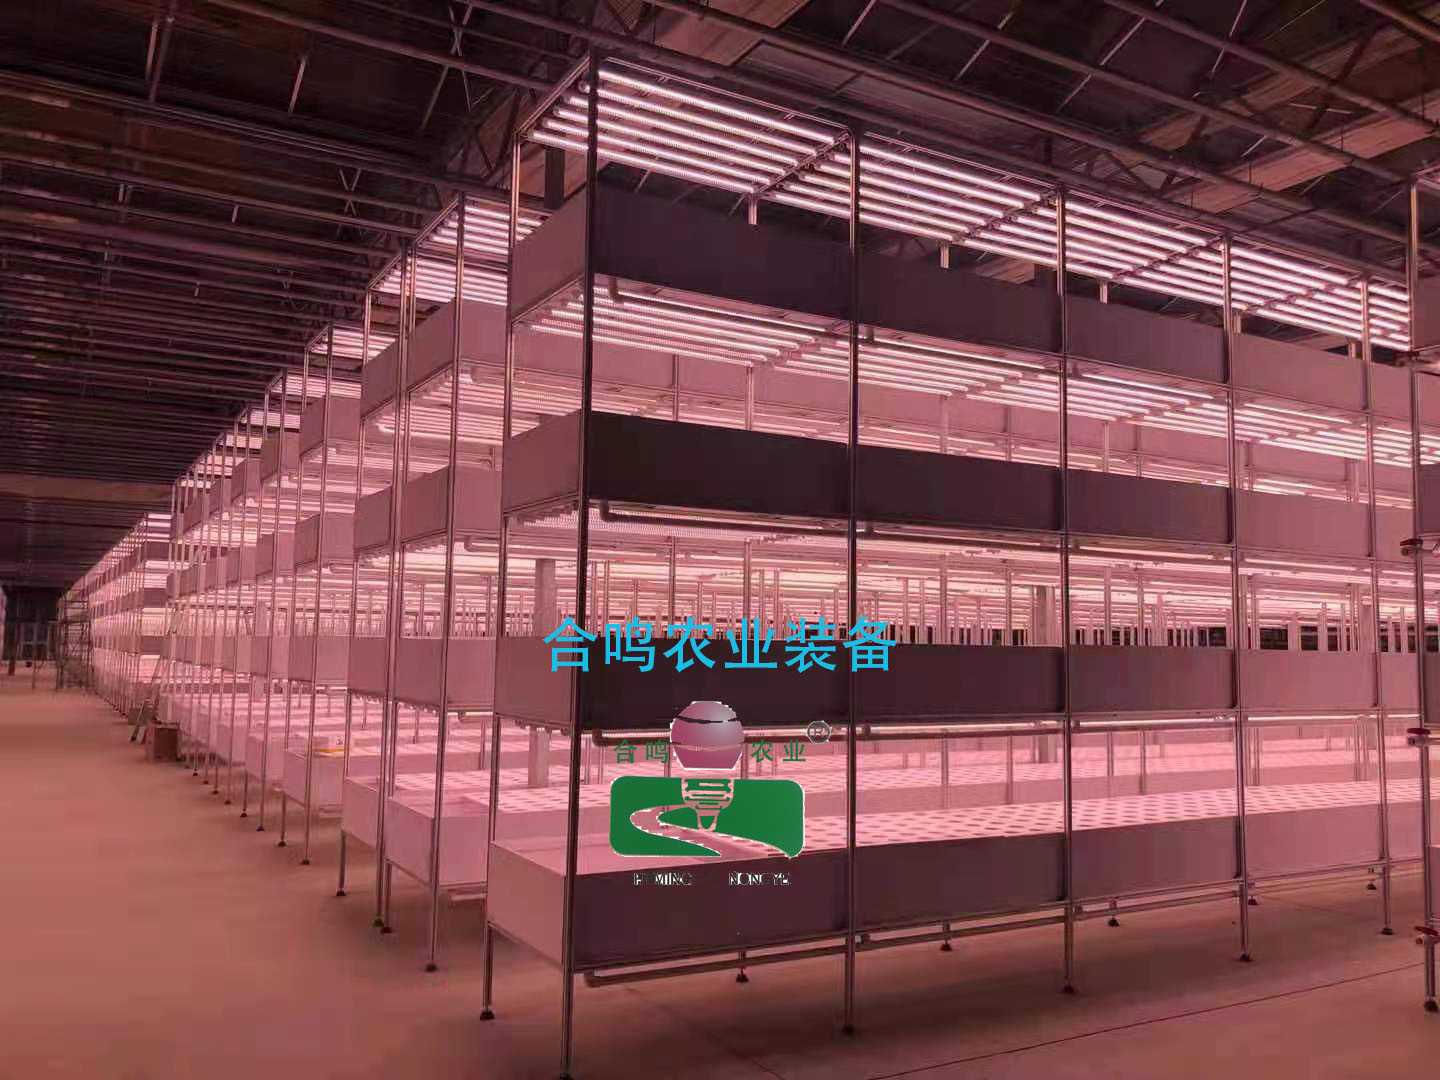 昌吉國家農業博覽園項目用燈